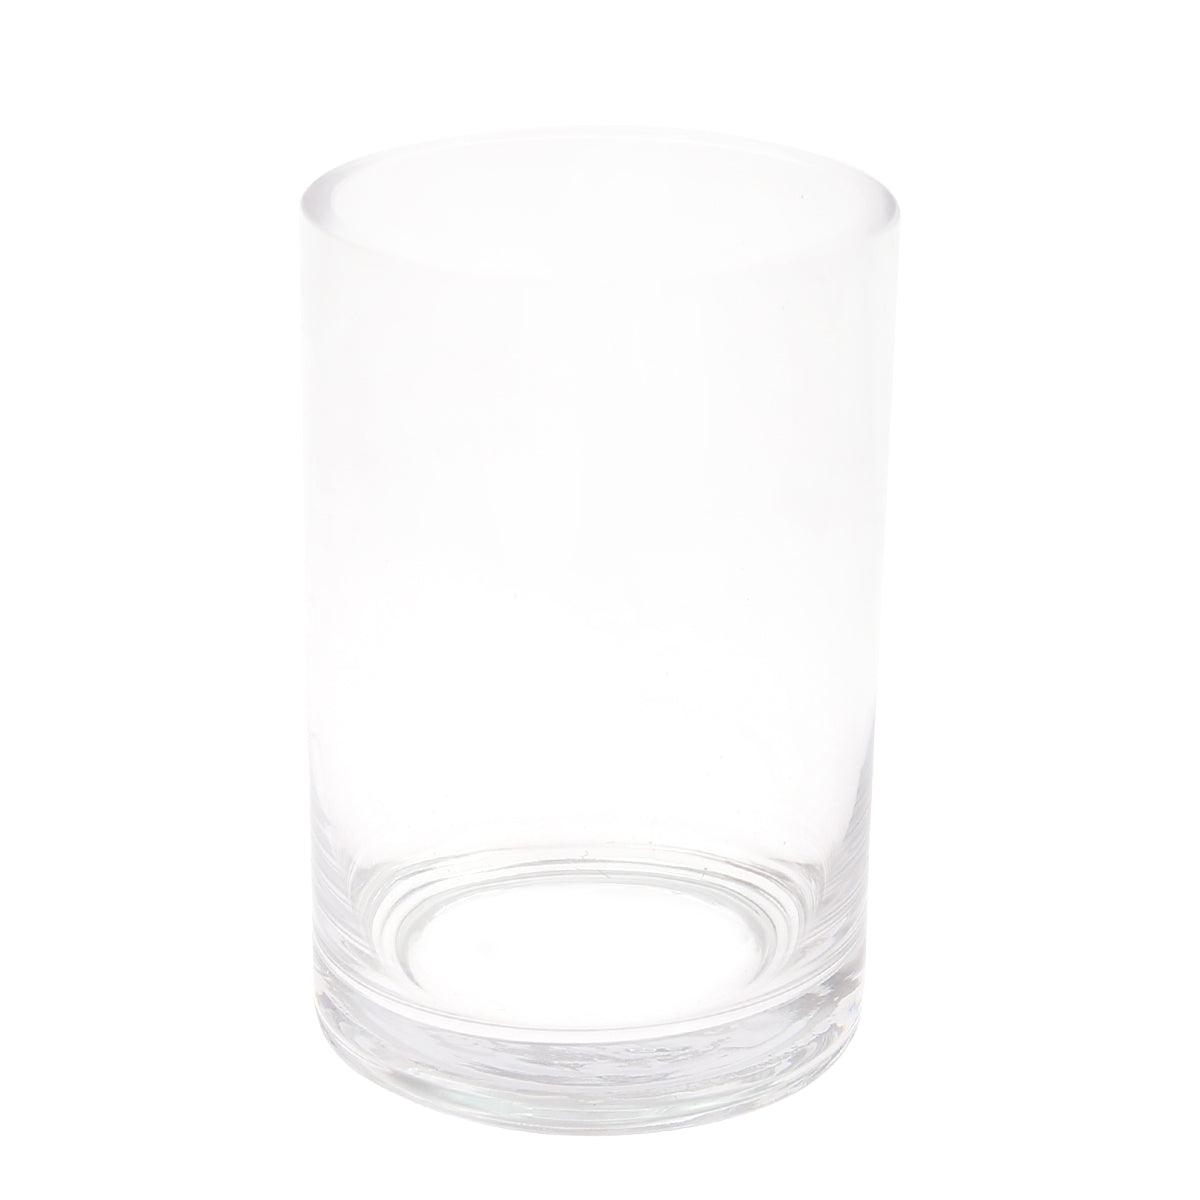 Vase Glass Plain.DY1300